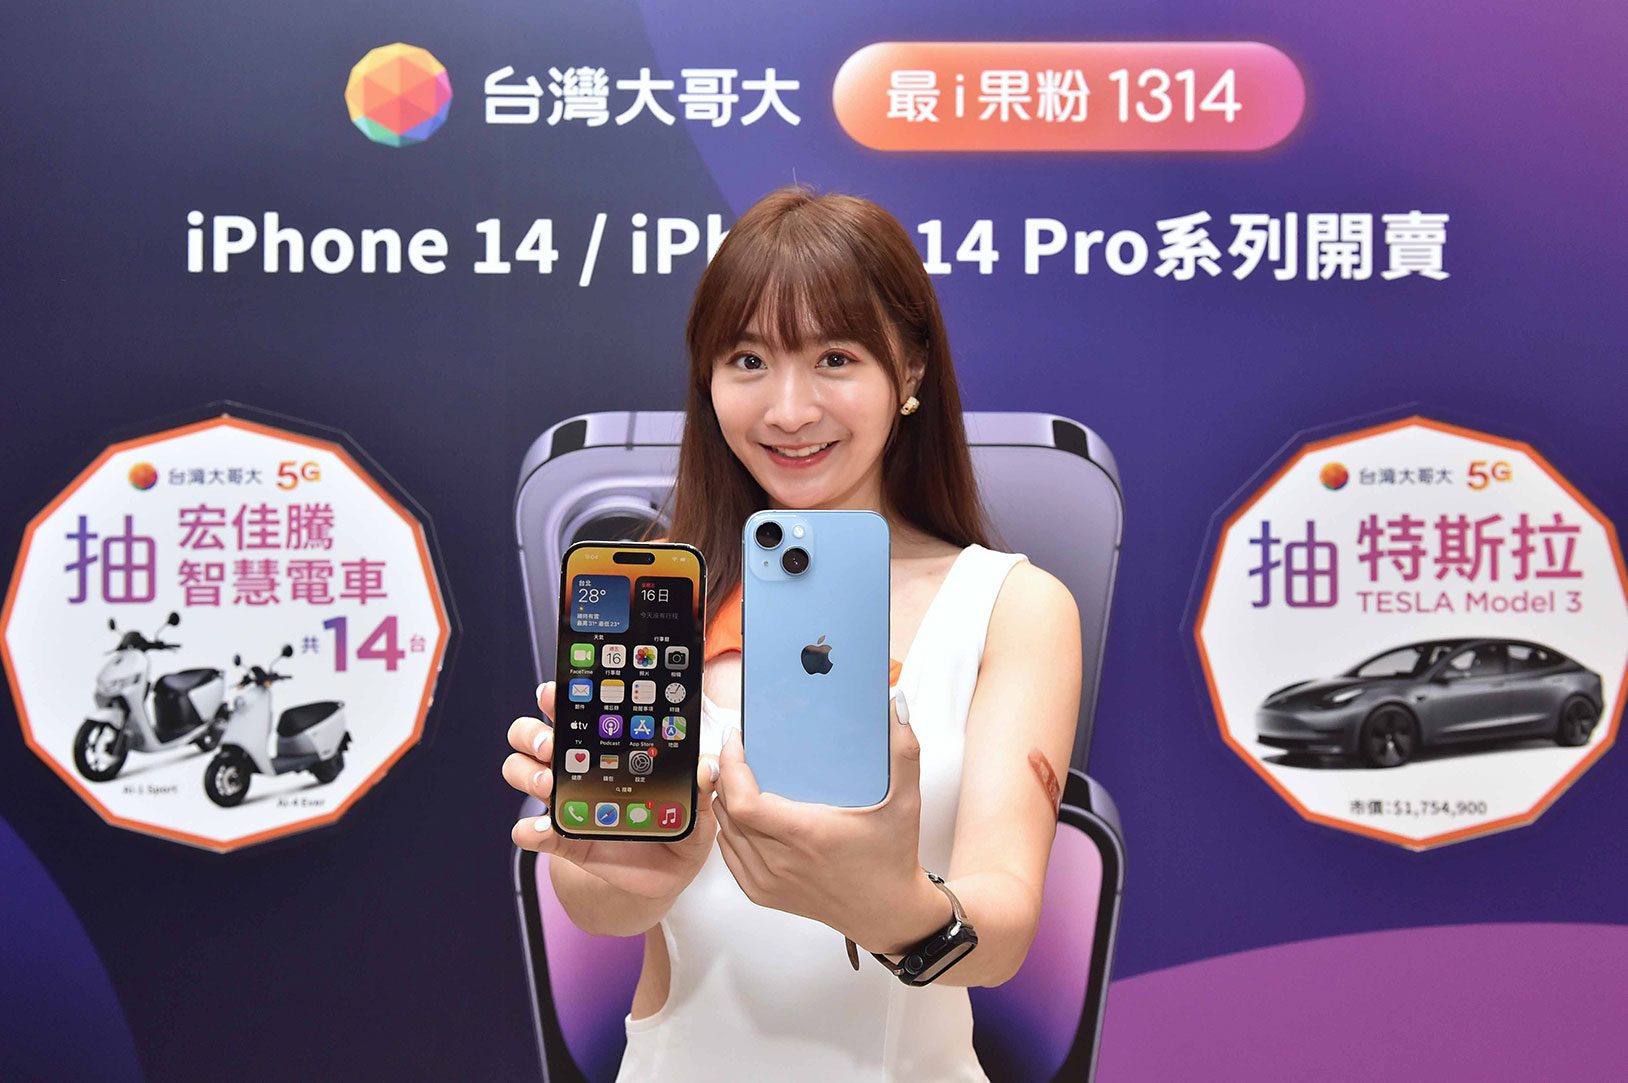 11 月 30 日前到台灣大哥大申辦 iPhone 14 配指定資費，就能抽 1 台特斯拉 Model 3，還有宏佳騰智慧電車 Ai-1 Sport、Ai-4 Ever (共 14 台)。